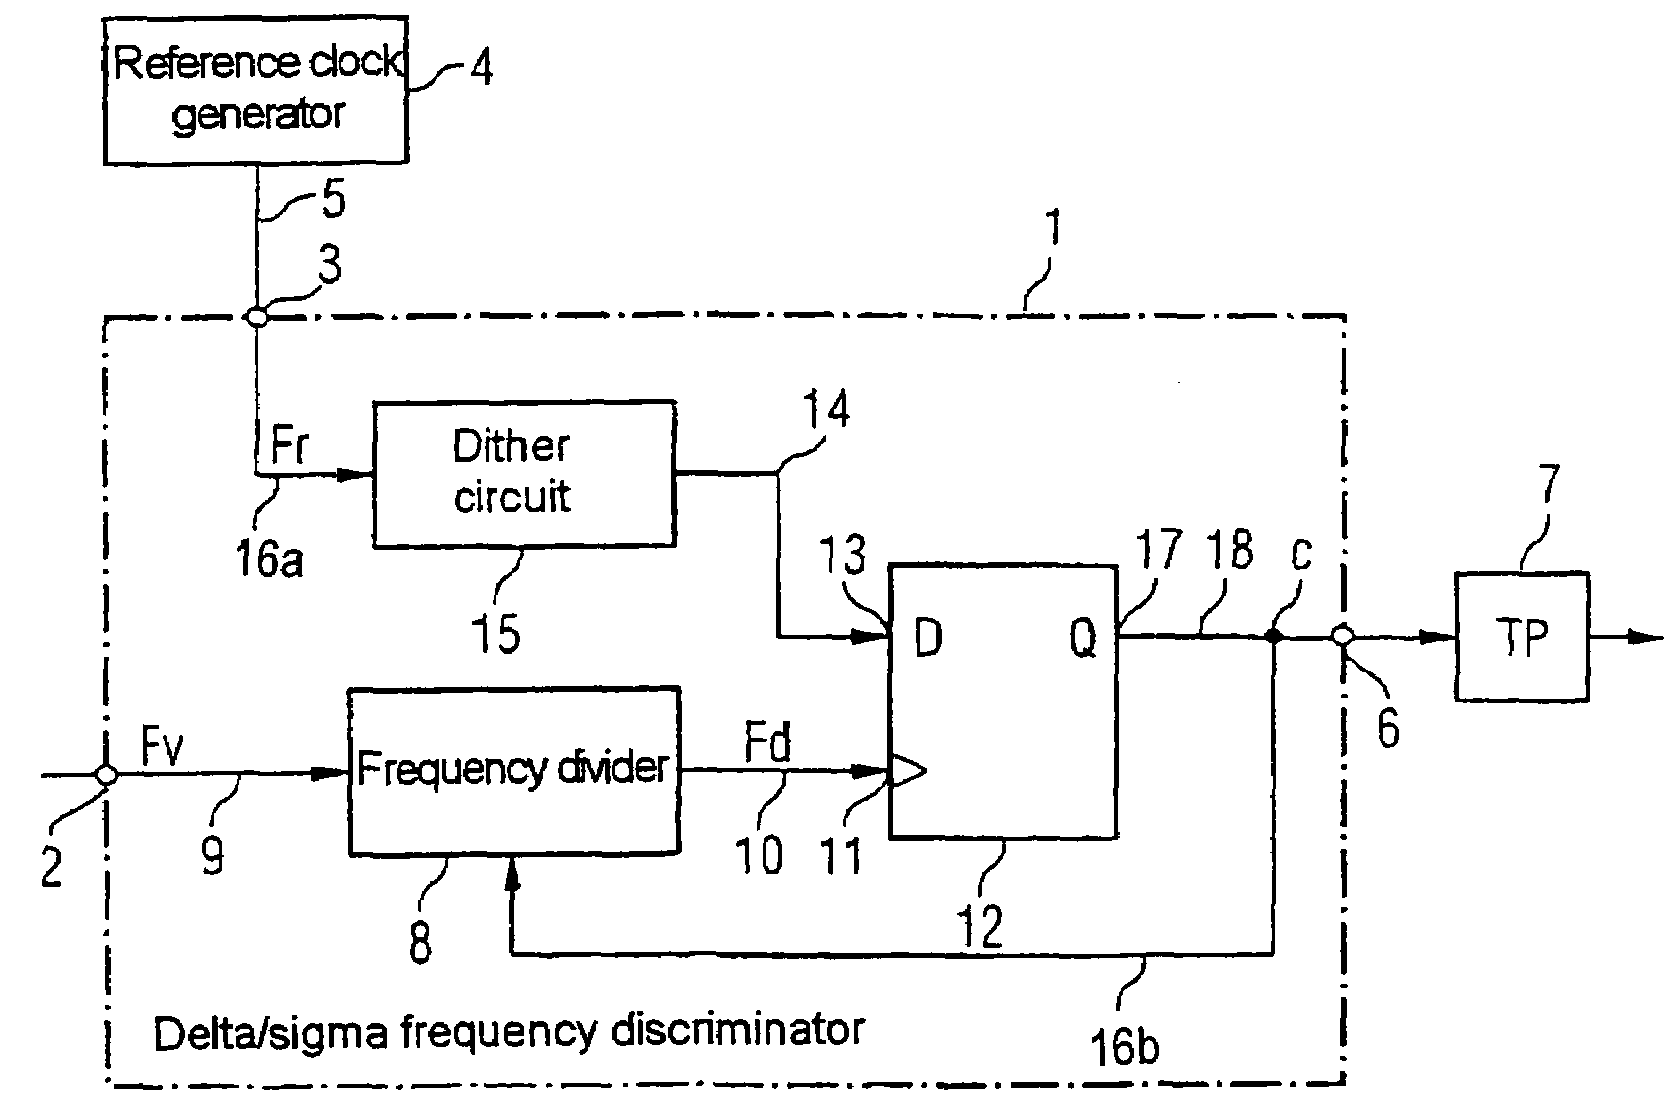 Delta/sigma frequency discriminator